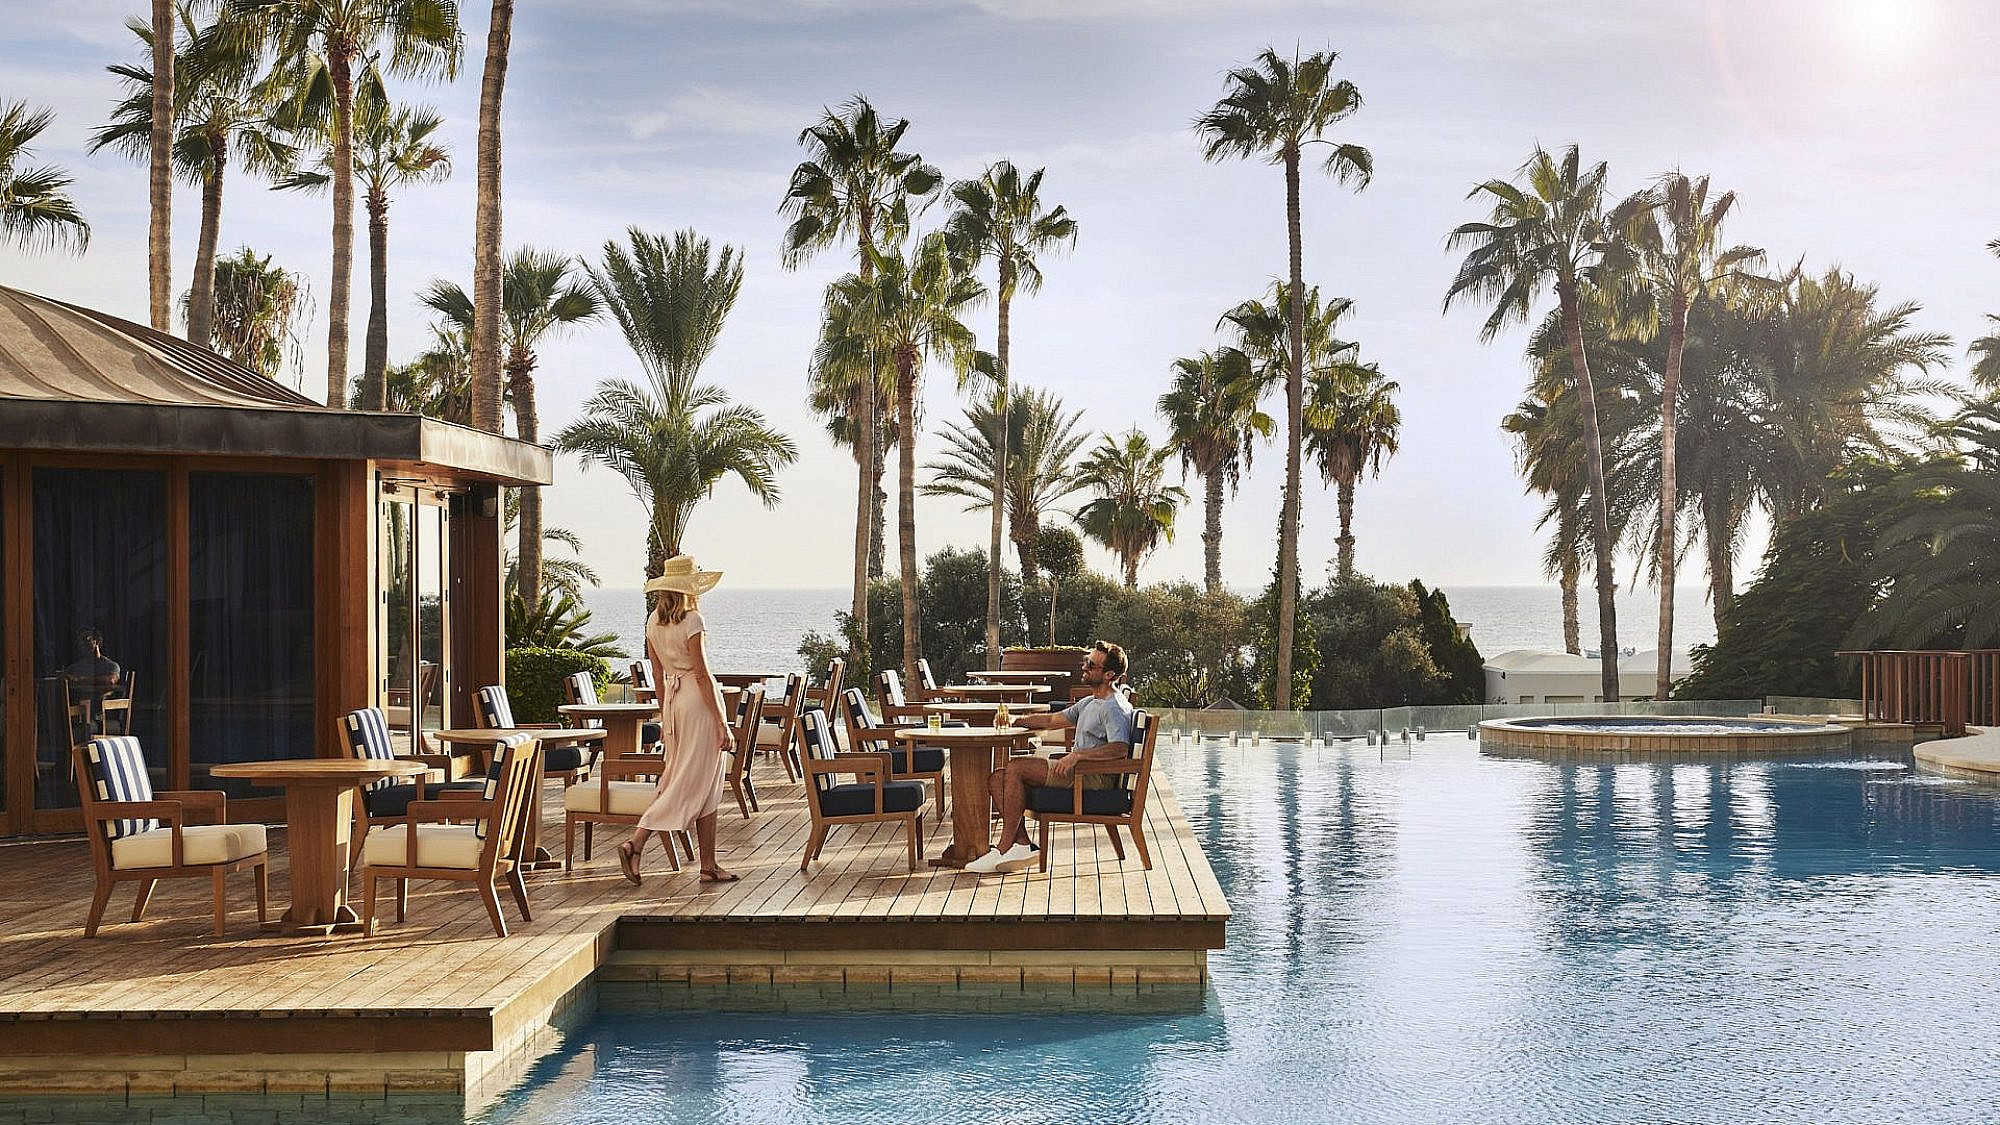 חופשה ים תיכונית קלילה, ניחוחה ומהנה. Annabelle Hotel בקפריסין | צילום: יח"צ